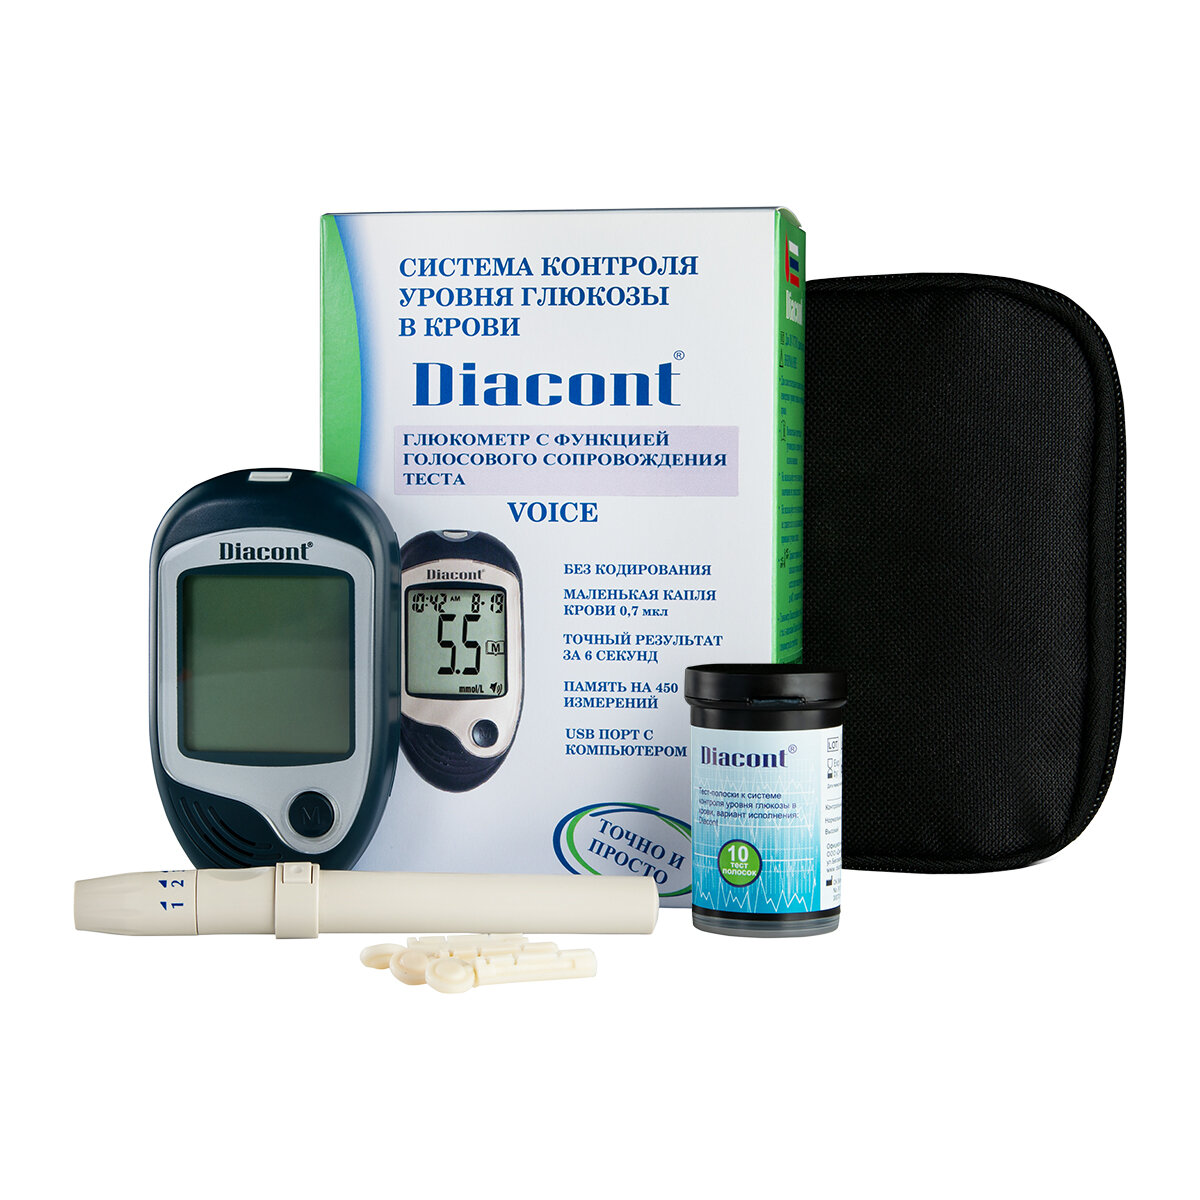 Диаконт Voice система контроля уровня глюкозы в крови с принадлежностями ООО Диаконт - фото №17